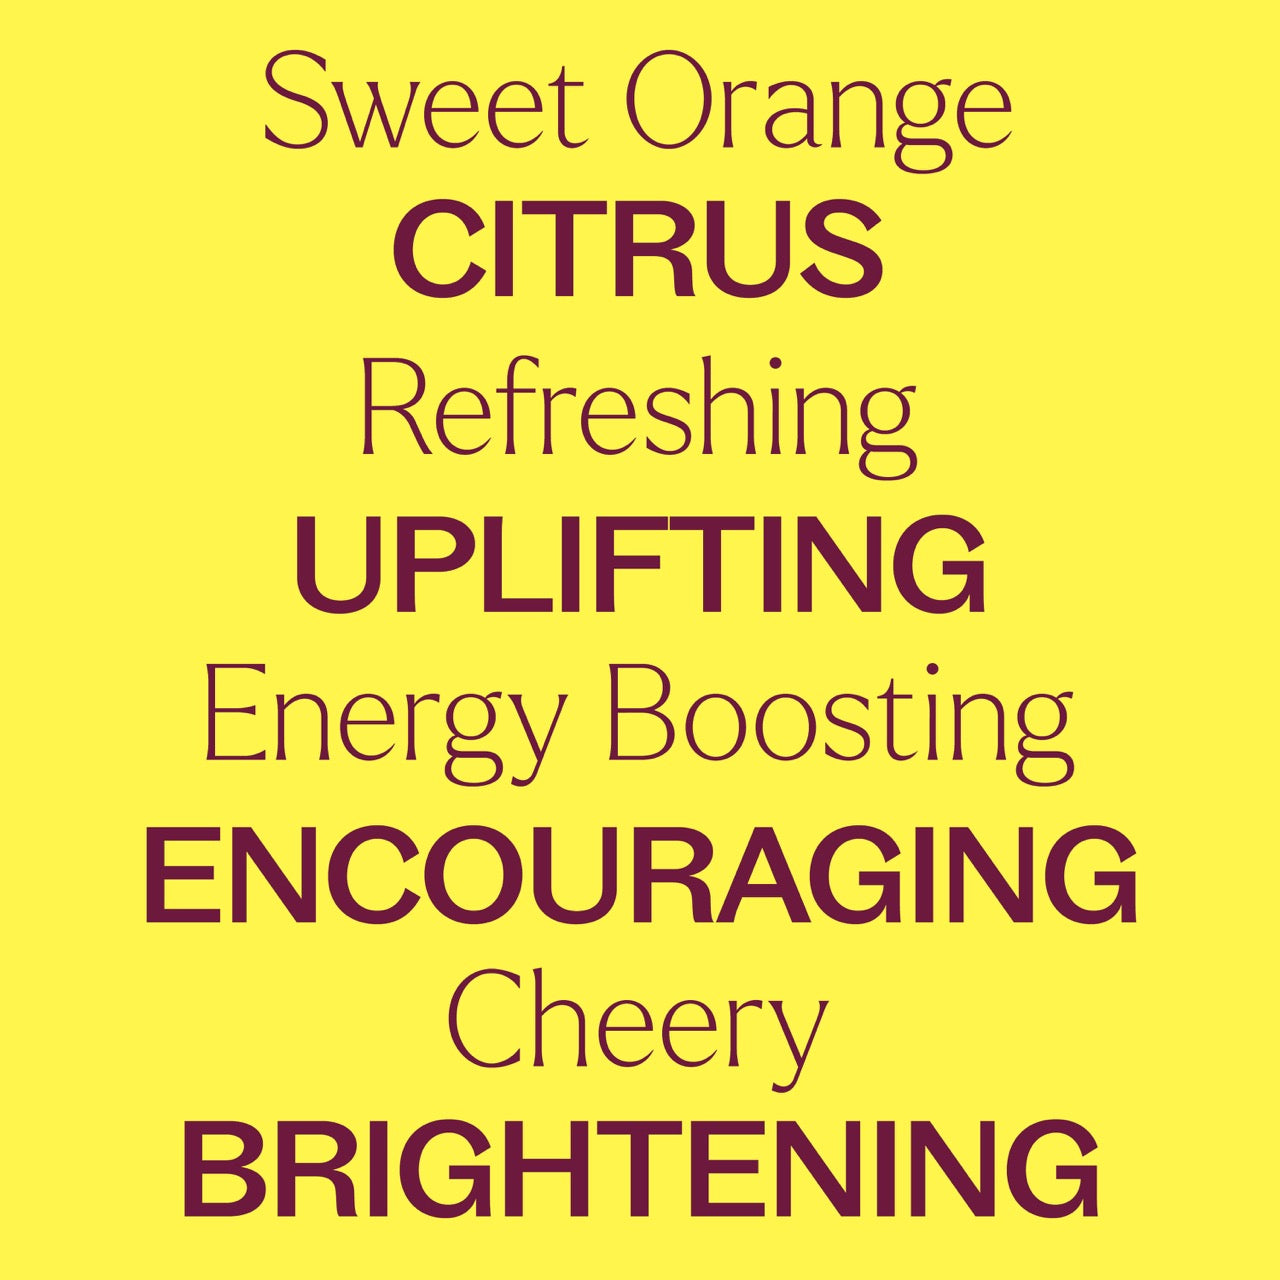 Sweet Orange Essential Oil key features: Citrus, refreshing, uplifting, energy boosting, encouraging, cheery, brightening